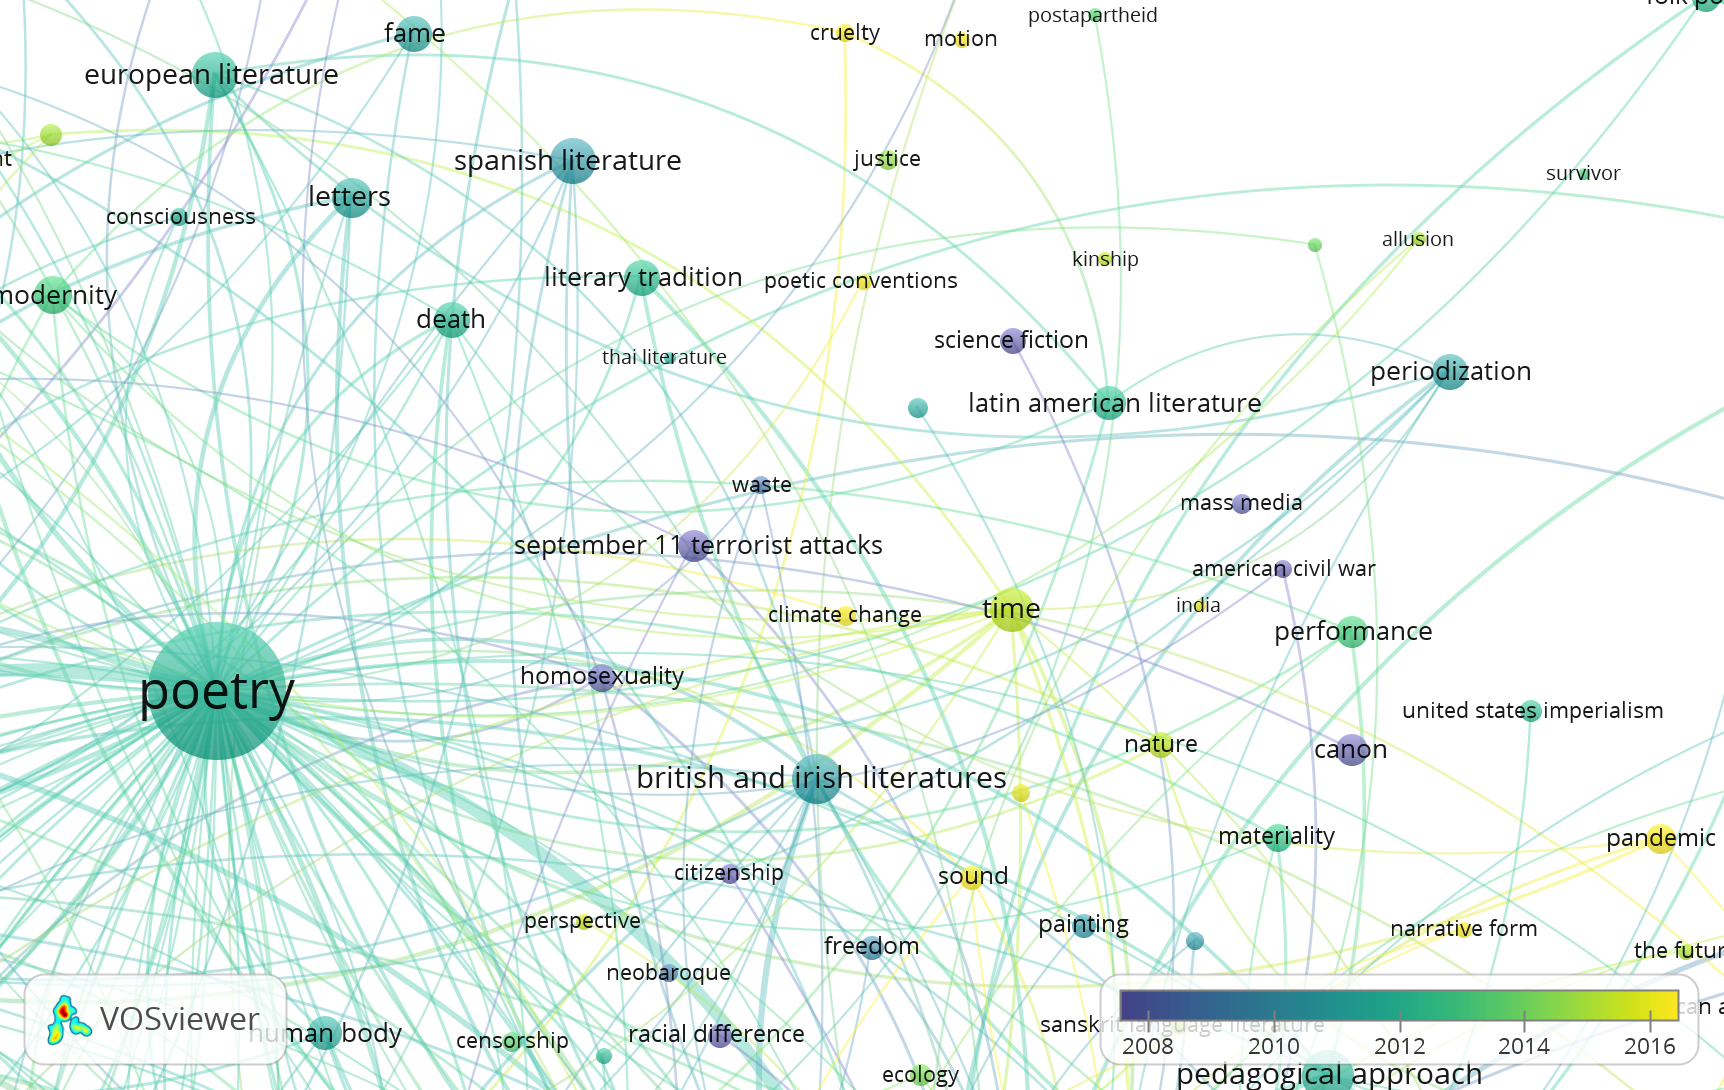 Screenshot of network diagram focused on the word "poetry"